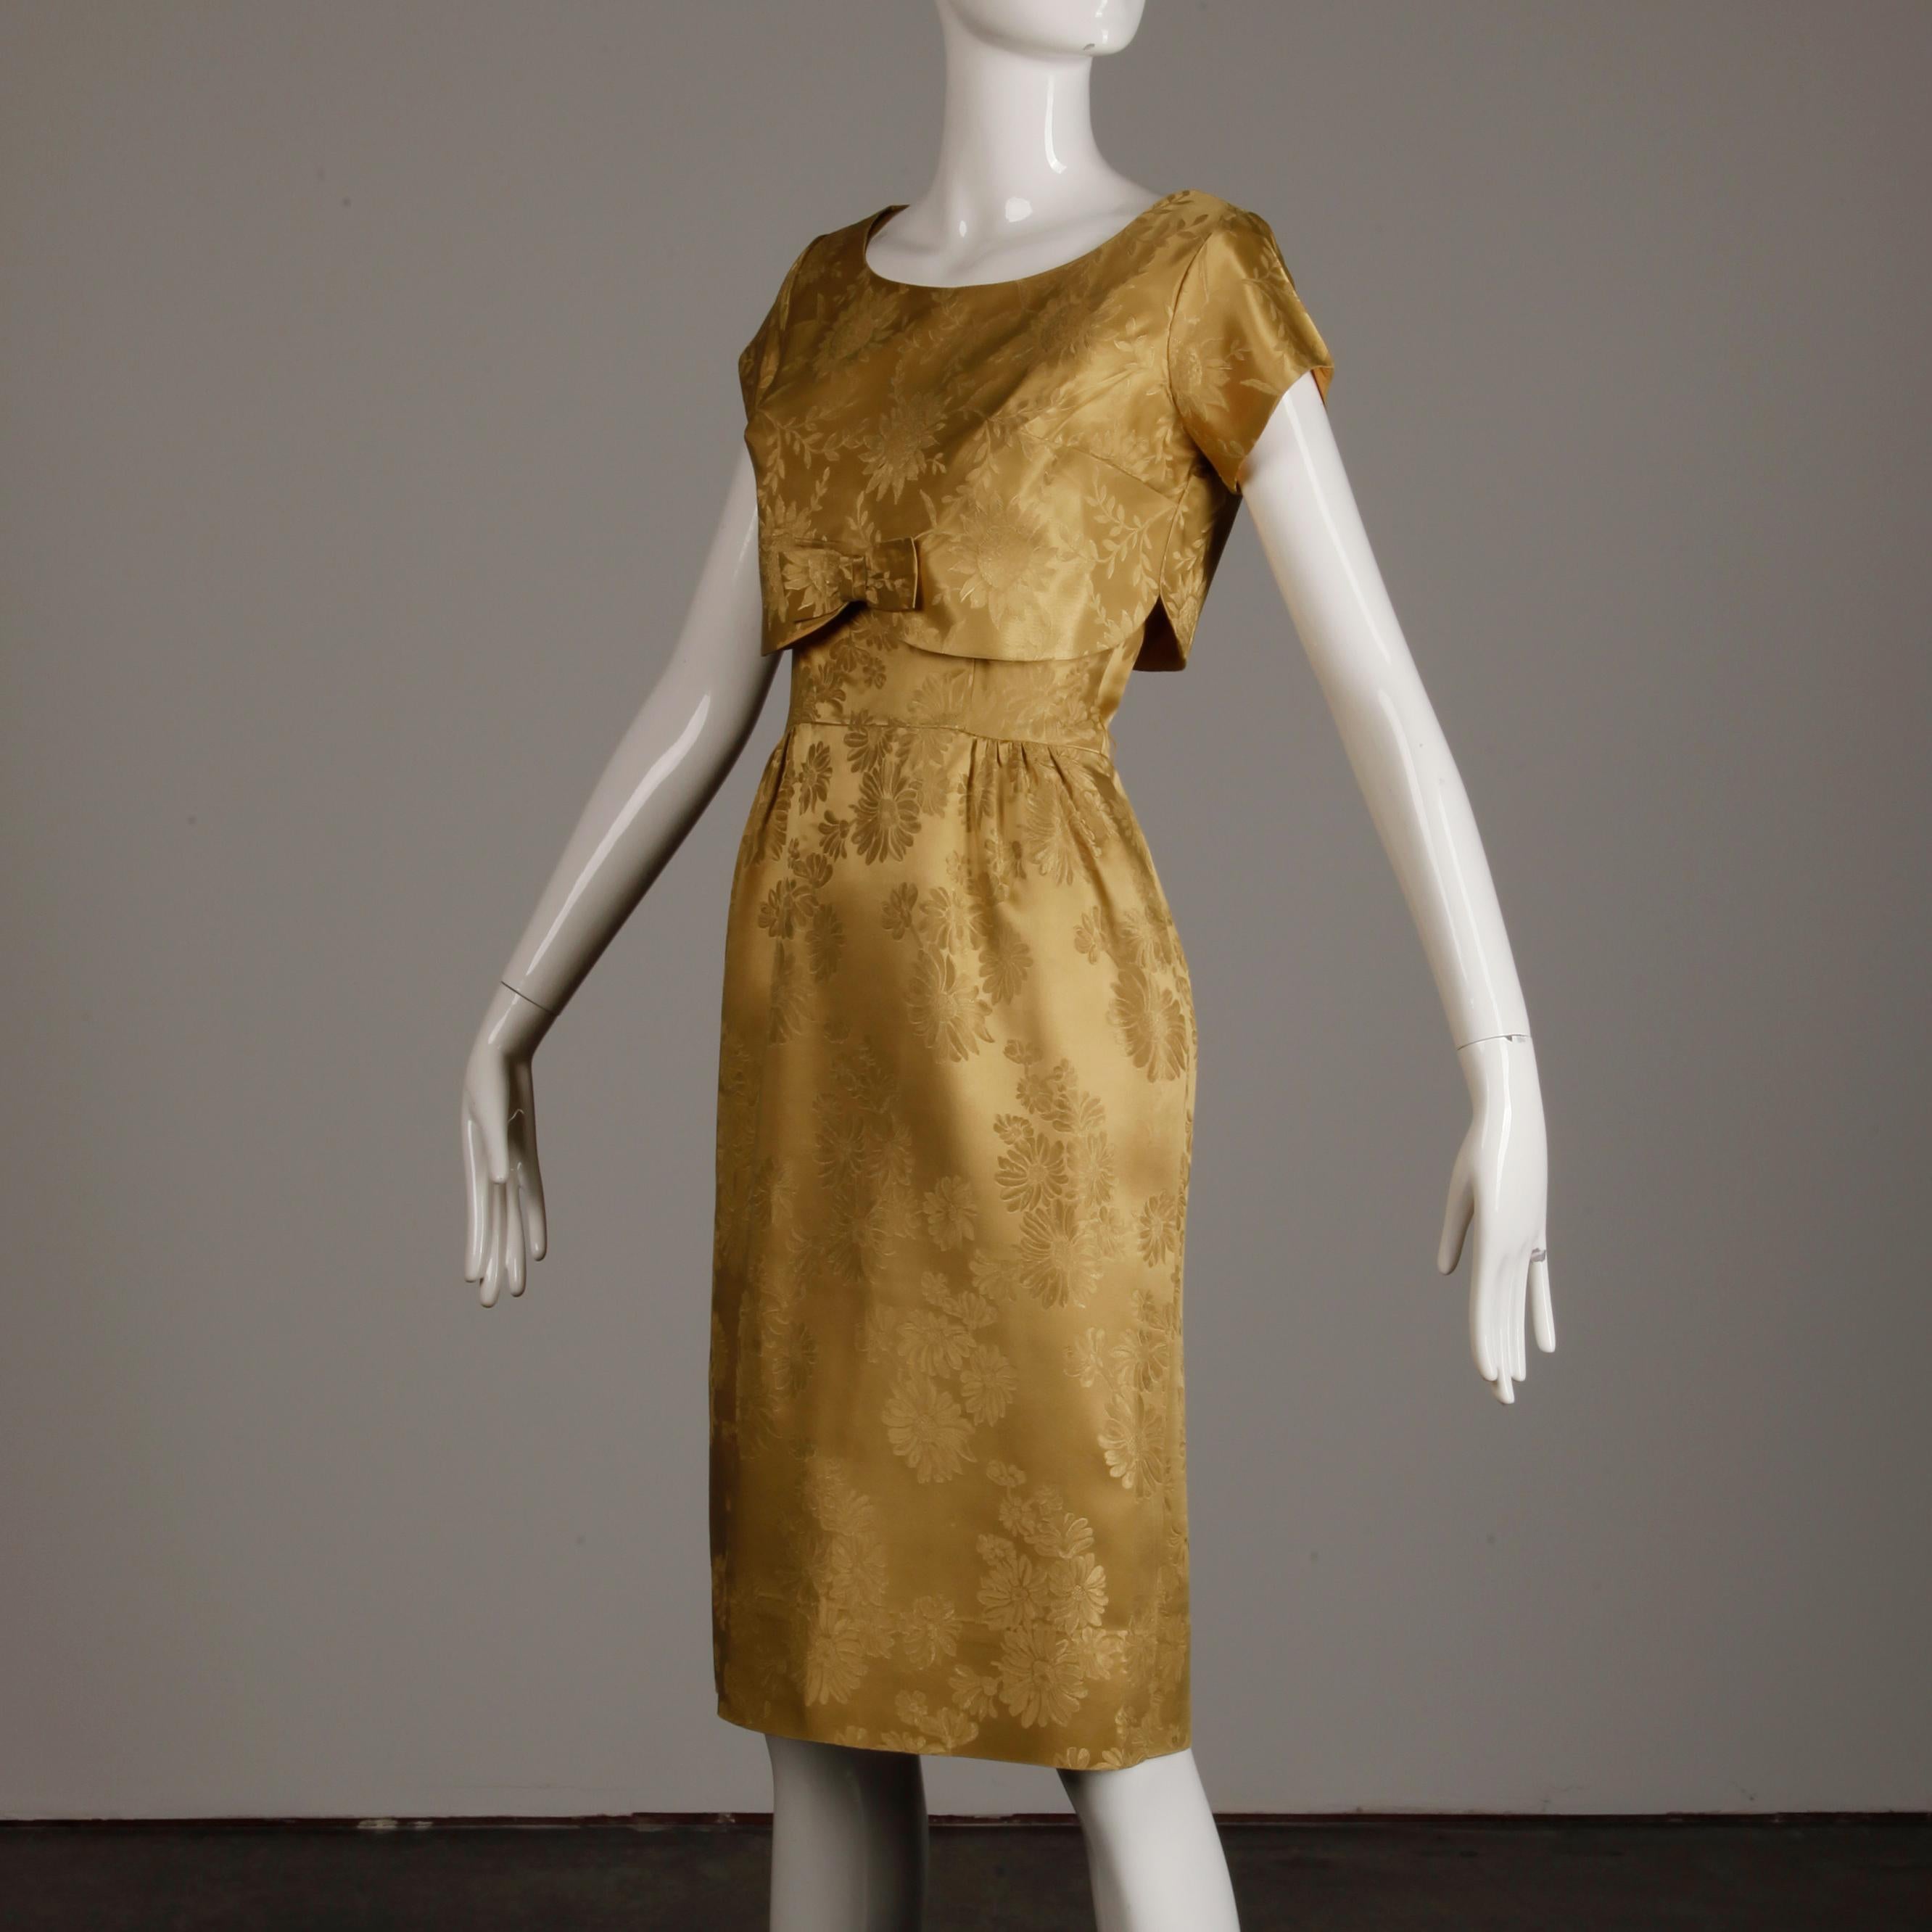 vintage brocade dress